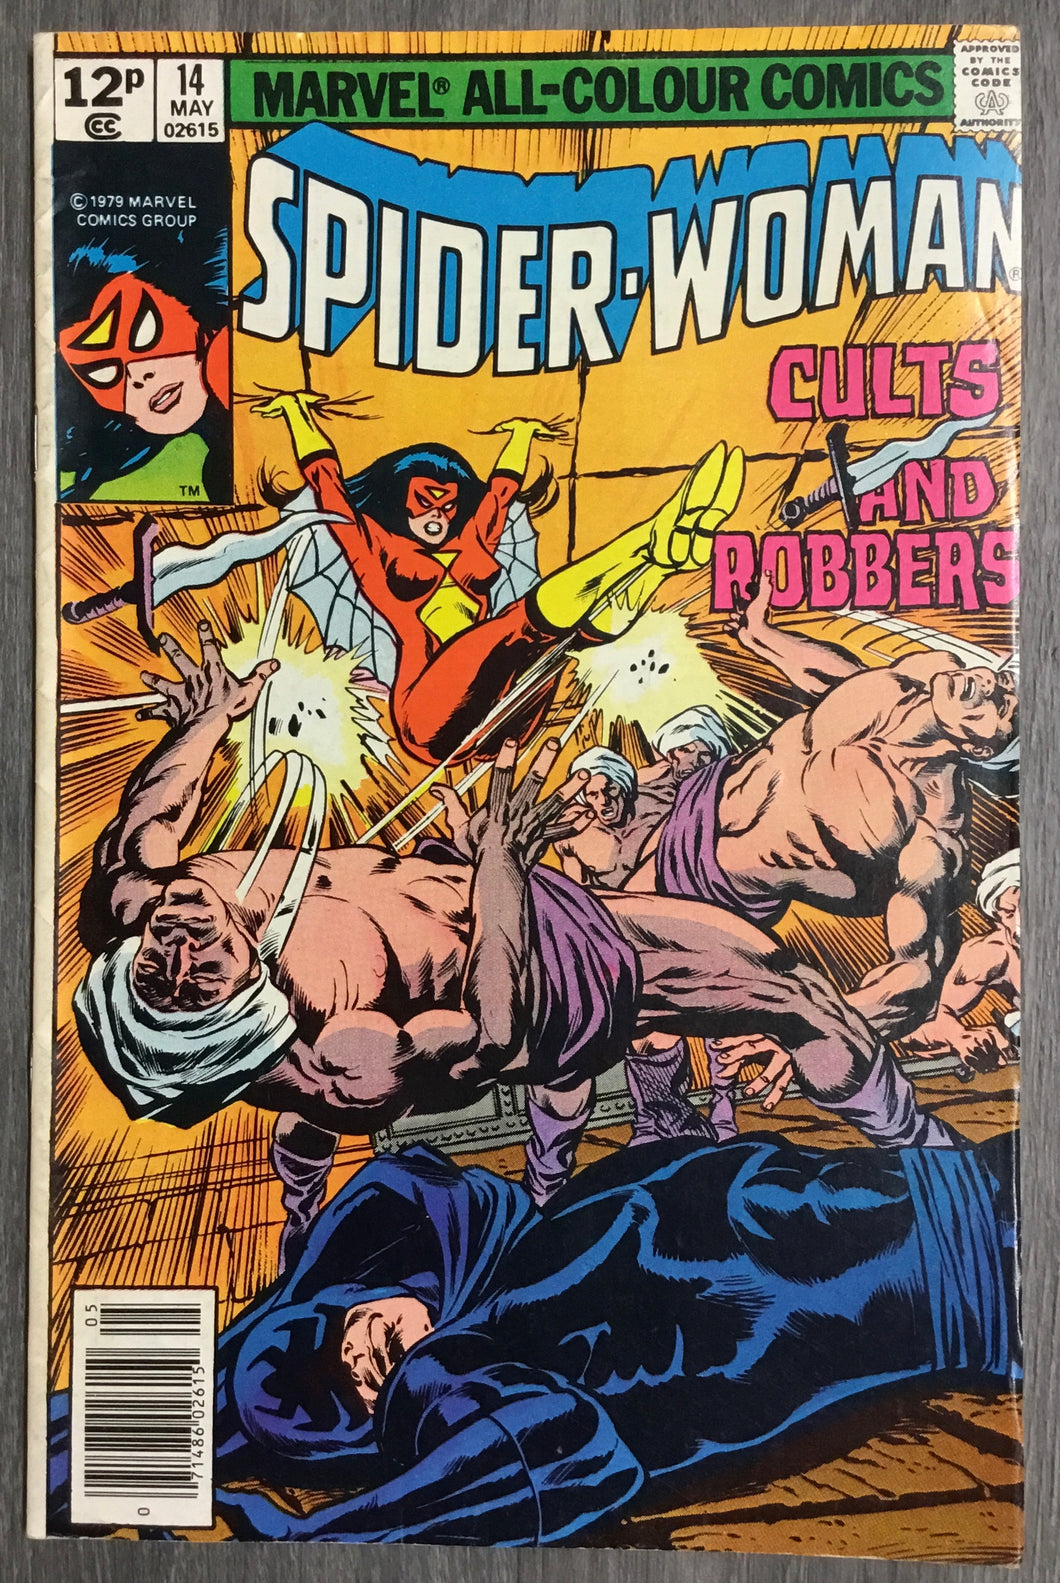 Spider-Woman No. #14 1979 Marvel Comics